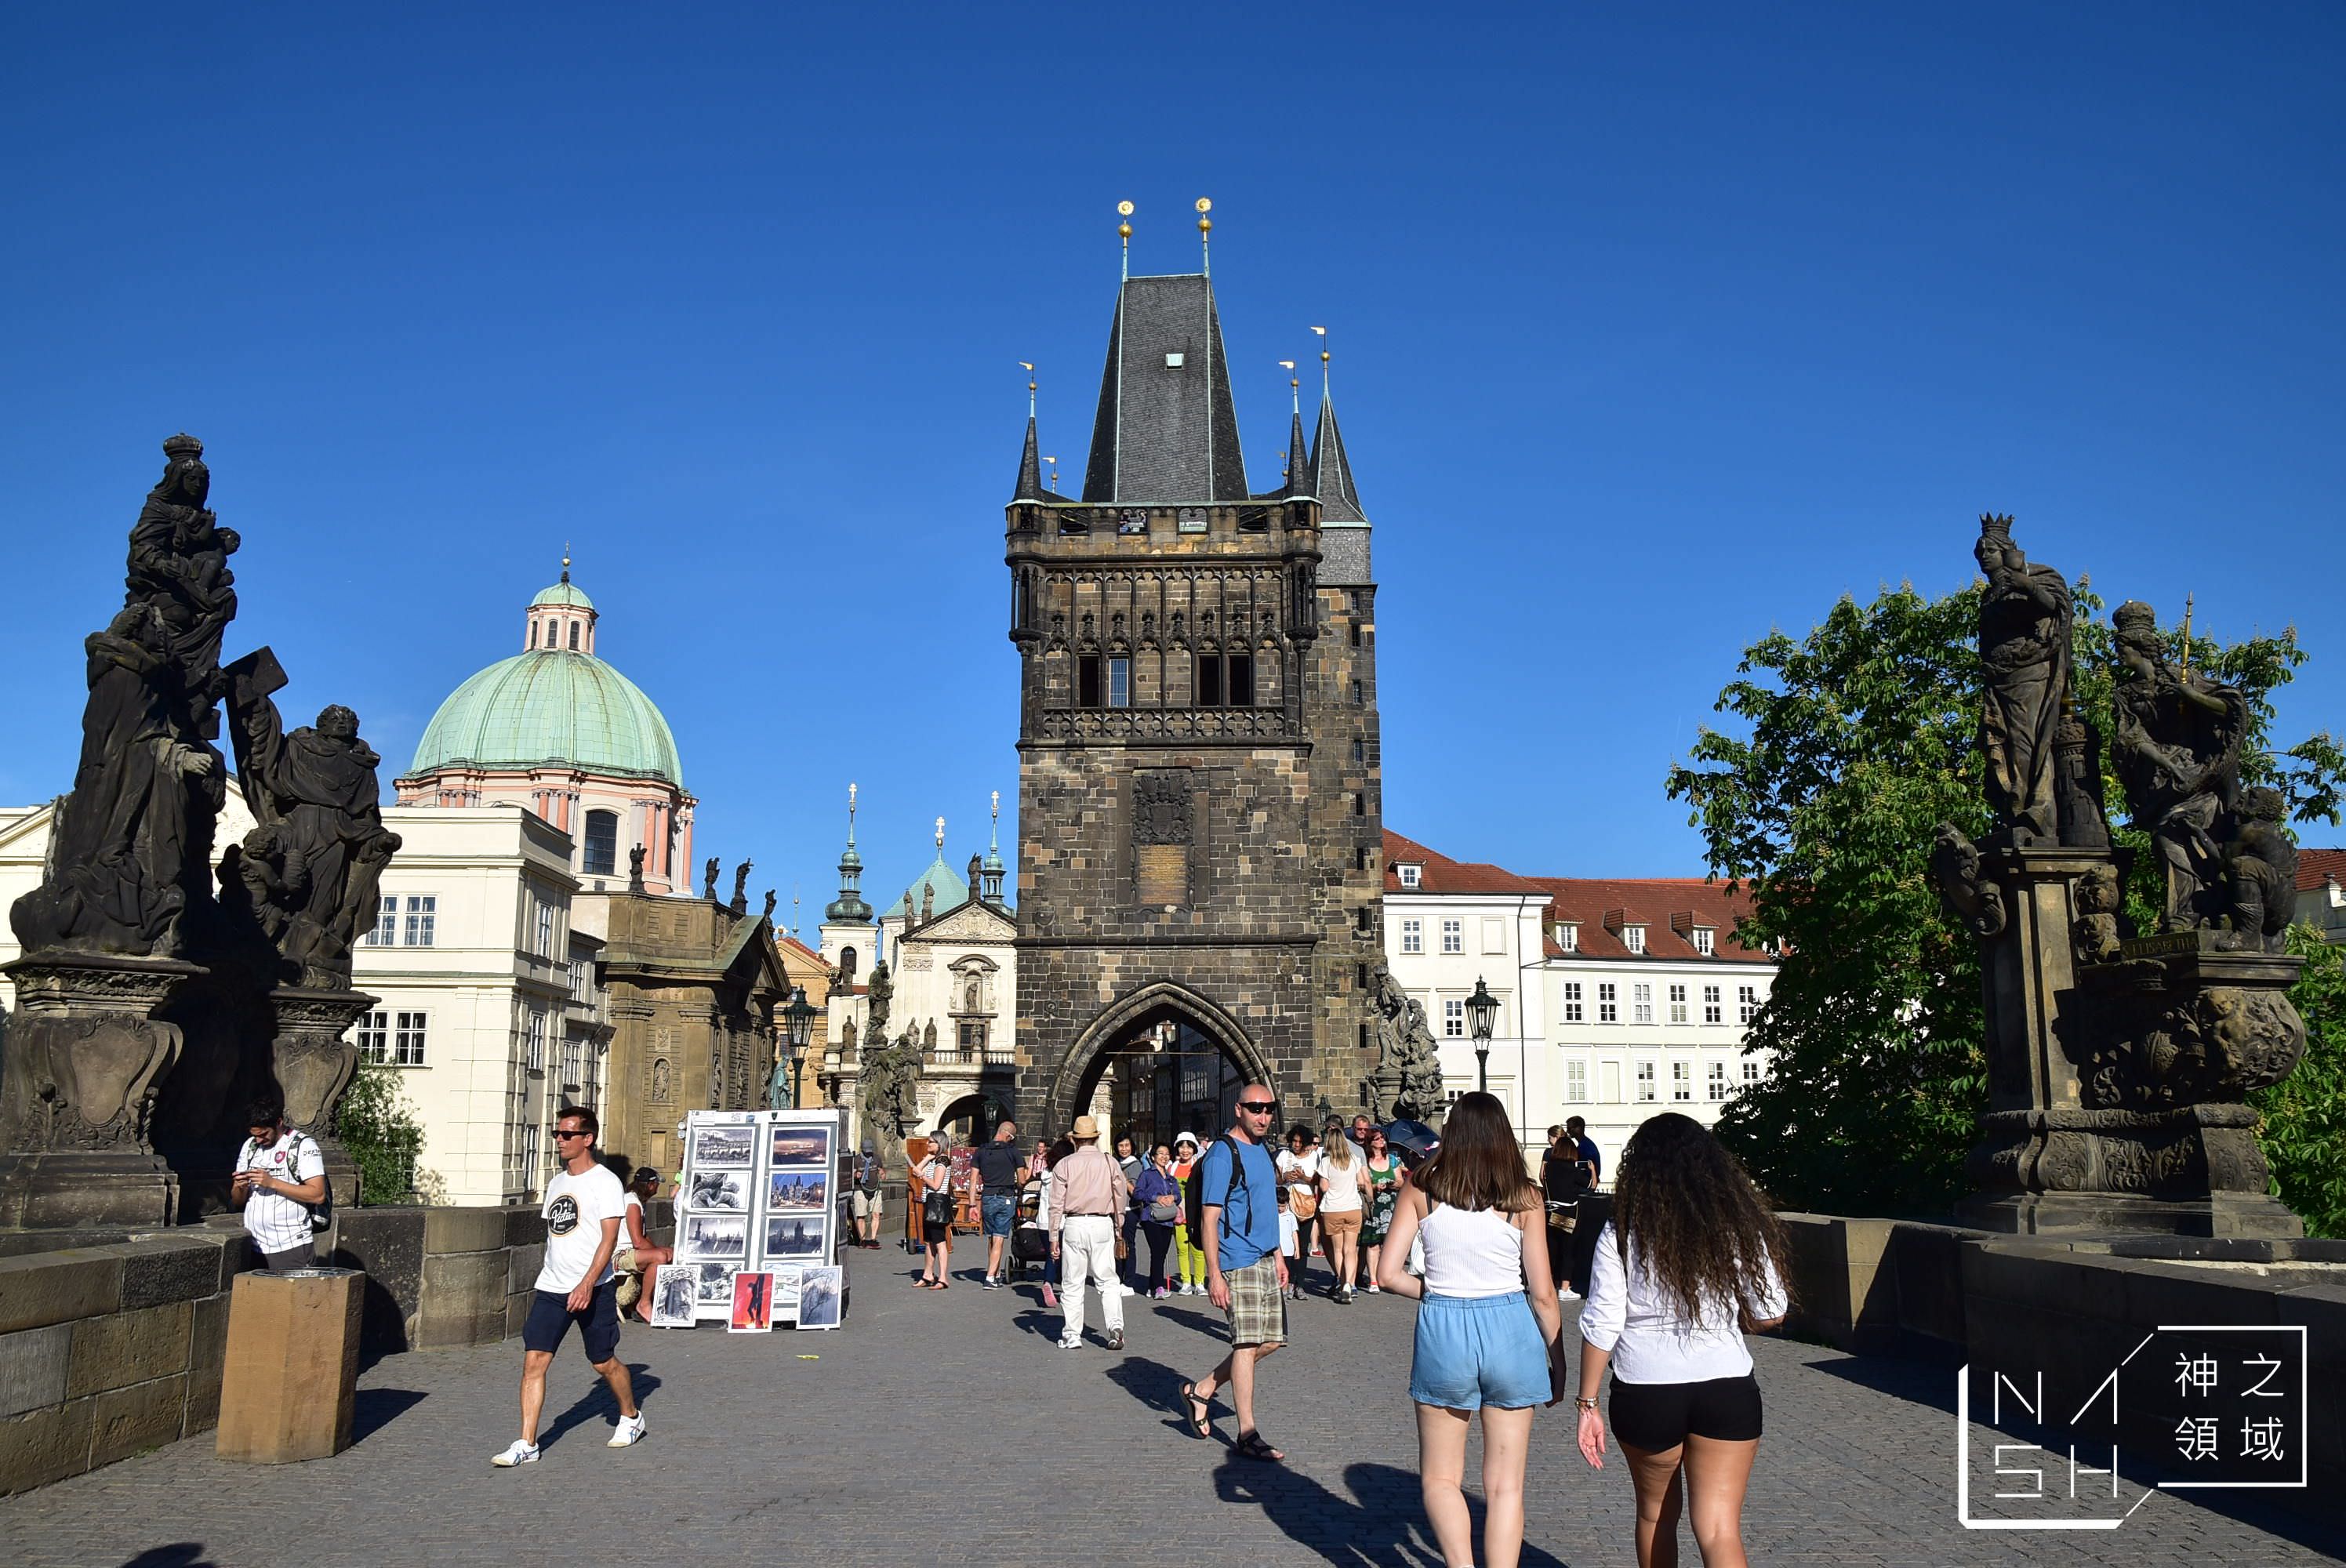 布拉格旅遊景點,布拉格地圖,布拉格一日遊,布拉格必買,布拉格換錢,布拉格,布拉格自由行,布拉格旅遊